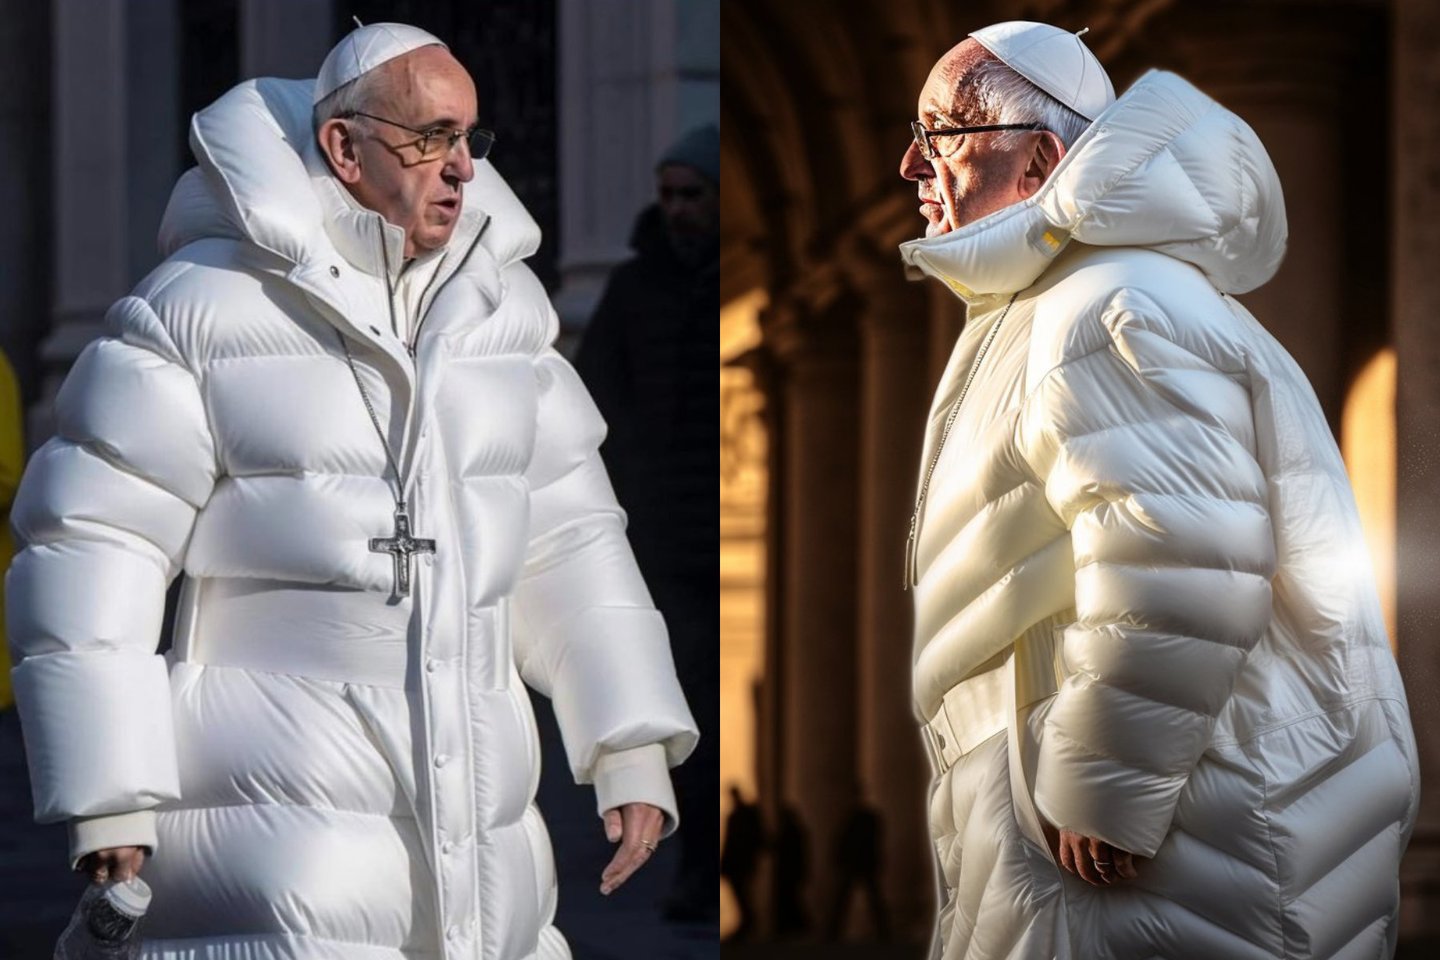  Atskleista, kaip atsirado internete žaibiškai paplitusi baltą pūkinį paltą vilkinčio popiežiaus Pranciškaus nuotrauka.<br> Socialinio tinklo nuotr.